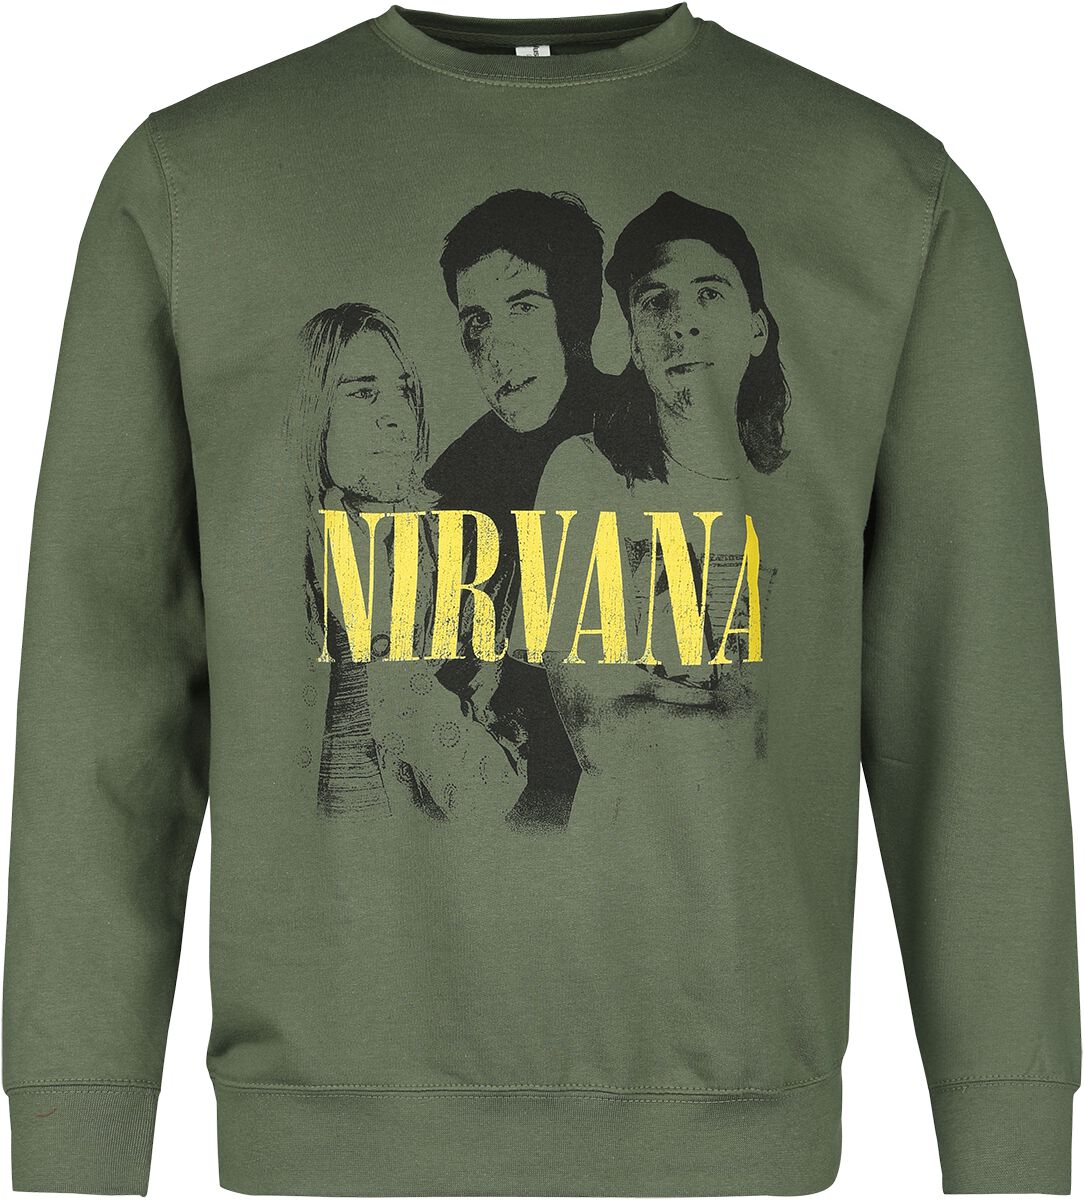 Nirvana Langarmshirt - Photo - S bis XXL - für Männer - Größe XL - grün  - Lizenziertes Merchandise!